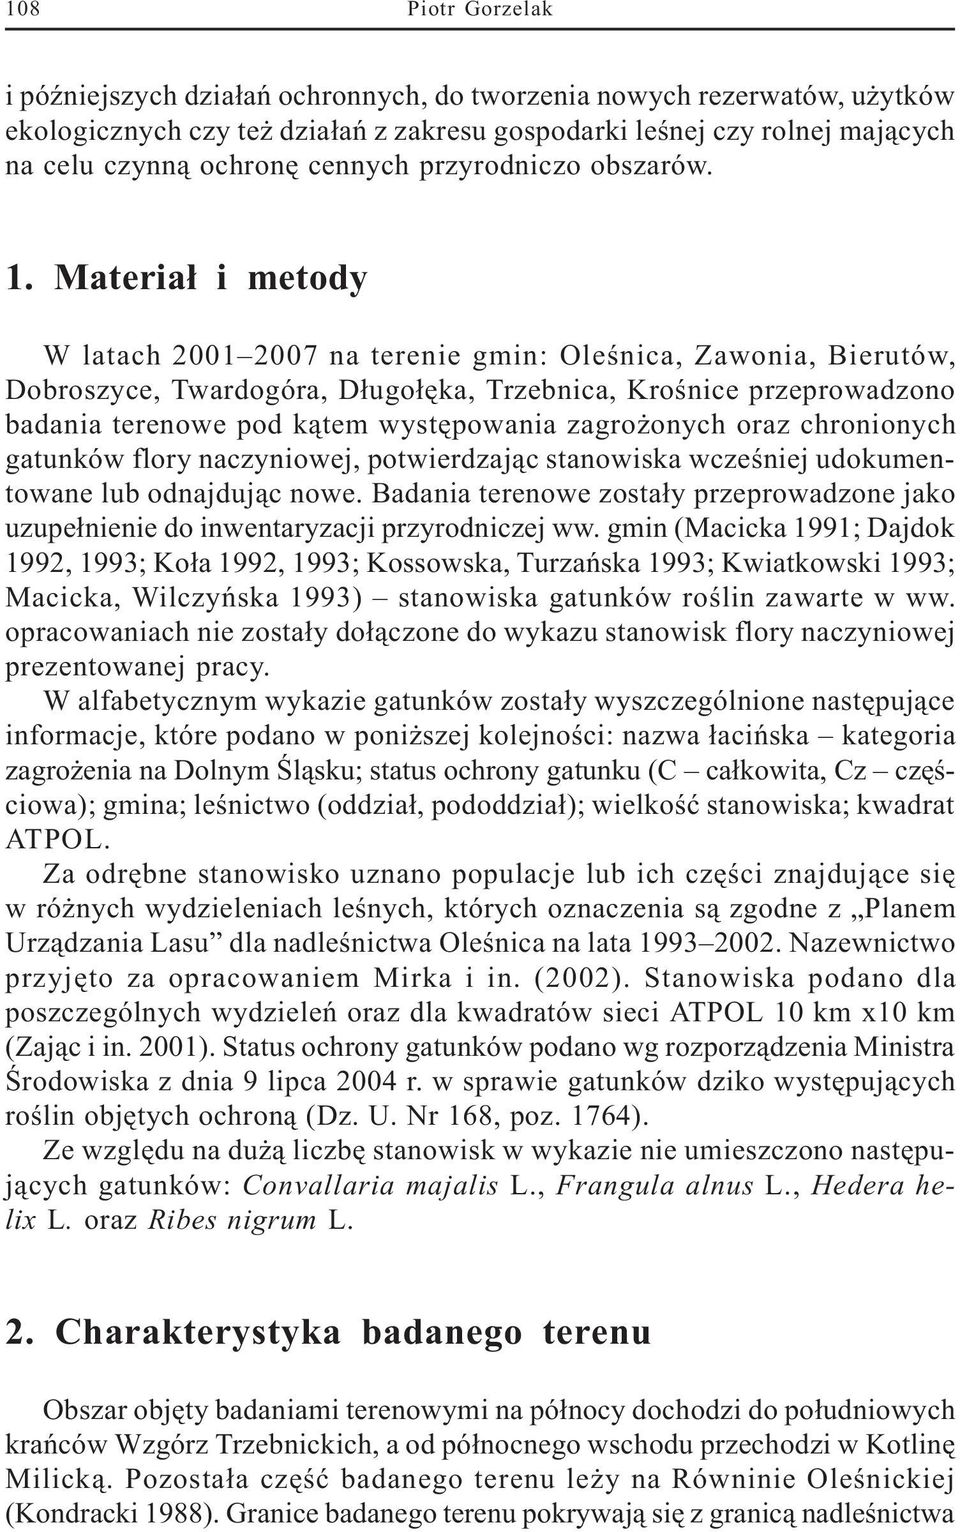 Materia³ i metody W latach 2001 2007 na terenie gmin: Oleœnica, Zawonia, Bierutów, Dobroszyce, Twardogóra, D³ugo³êka, Trzebnica, Kroœnice przeprowadzono badania terenowe pod k¹tem wystêpowania zagro